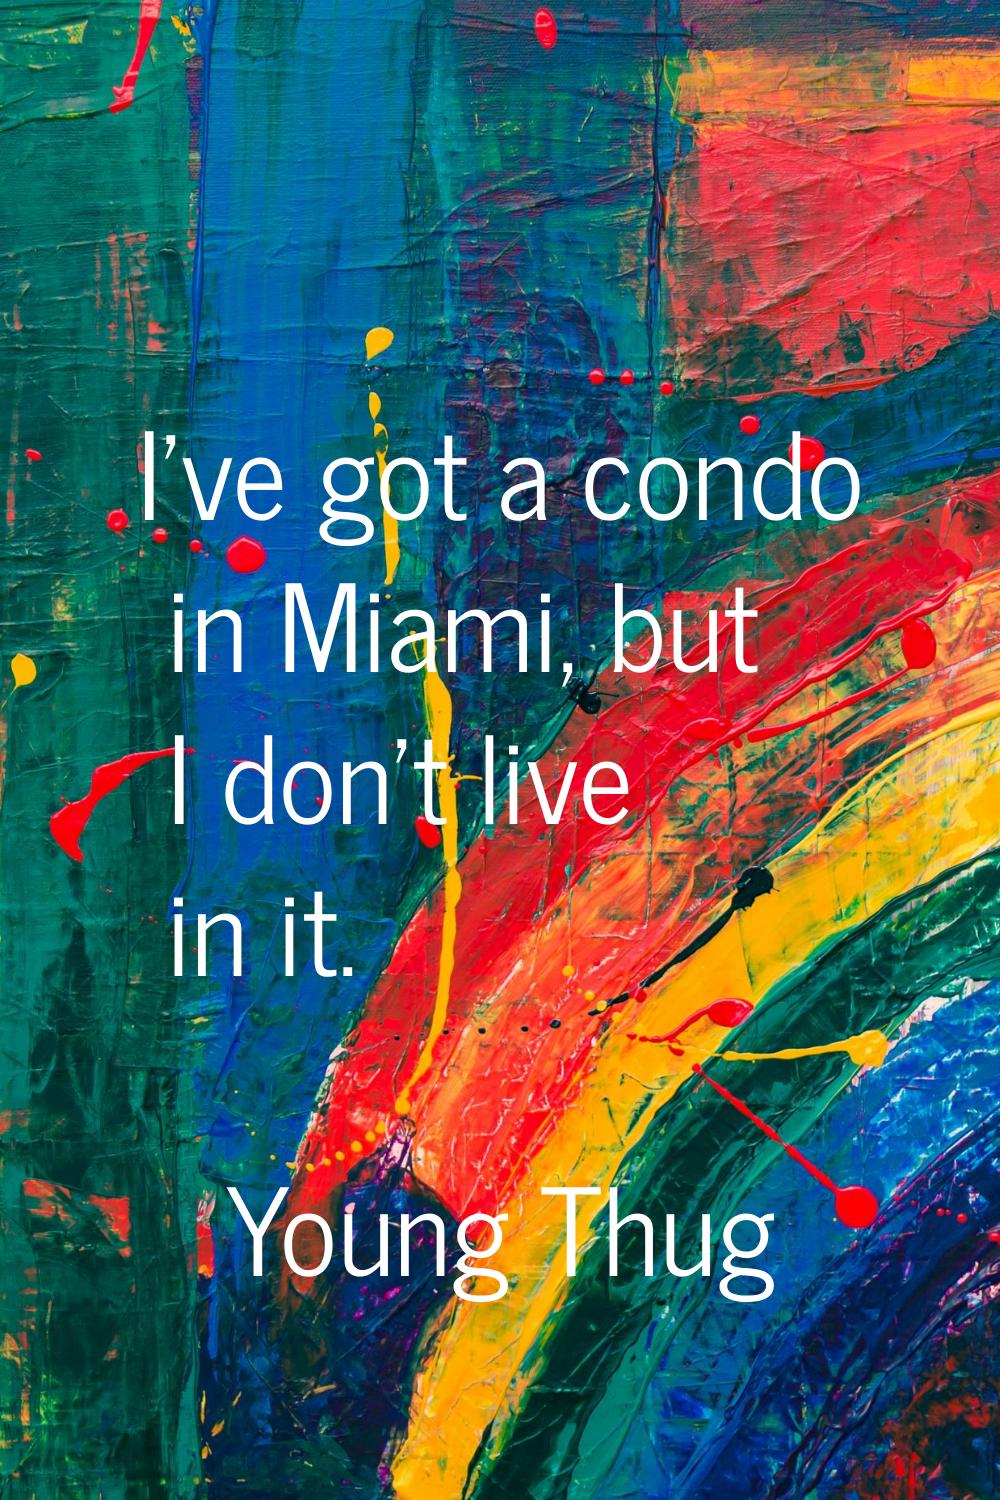 I've got a condo in Miami, but I don't live in it.